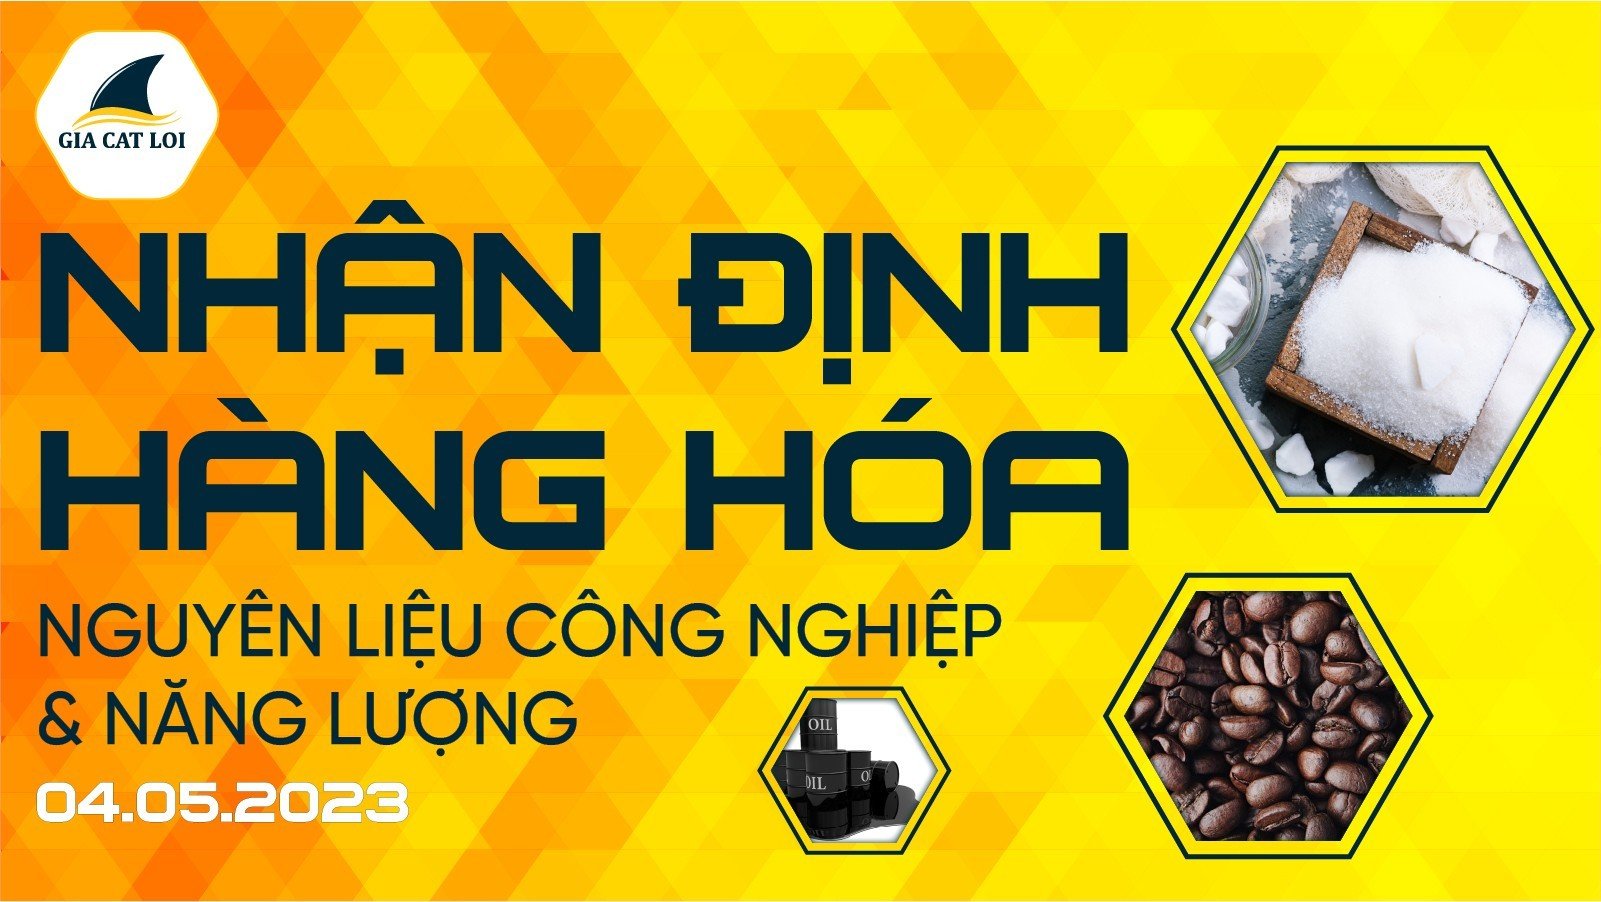 nguyen-lieu-cong-nghiep-nang-luong-04-05-2023